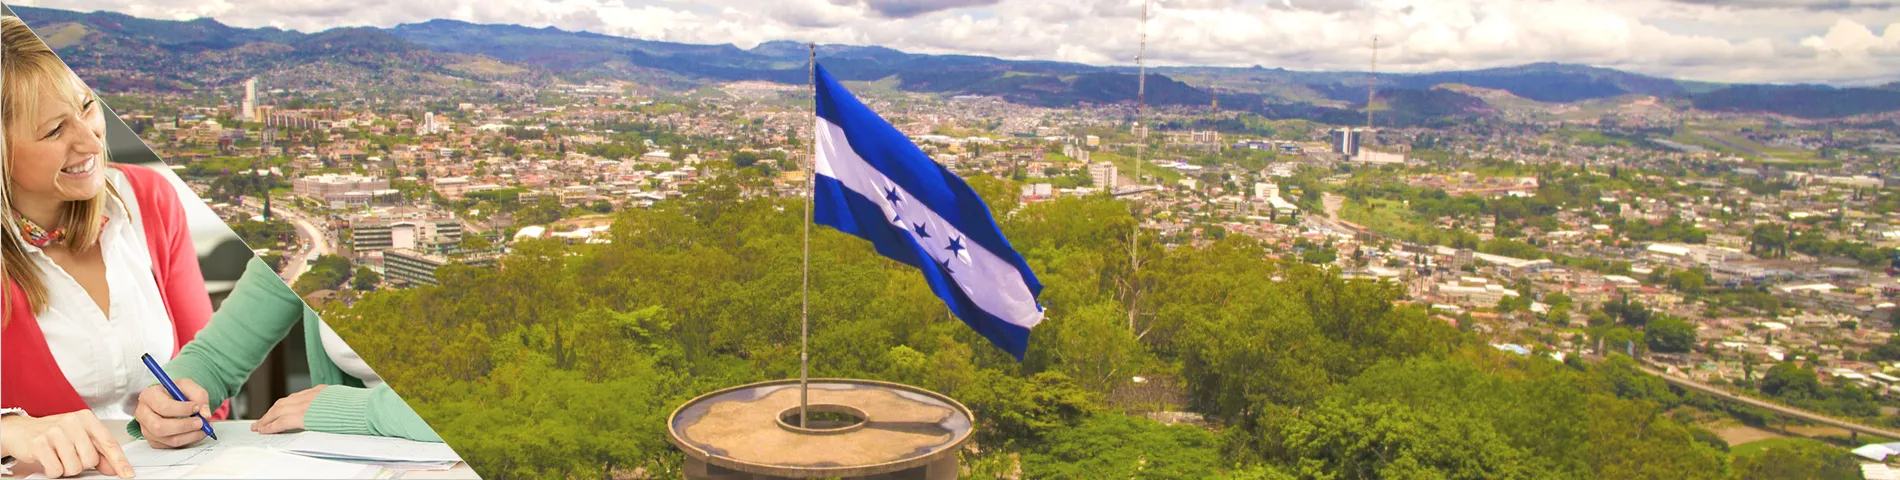 Honduras - Estude uma língua & more na casa do seu professor